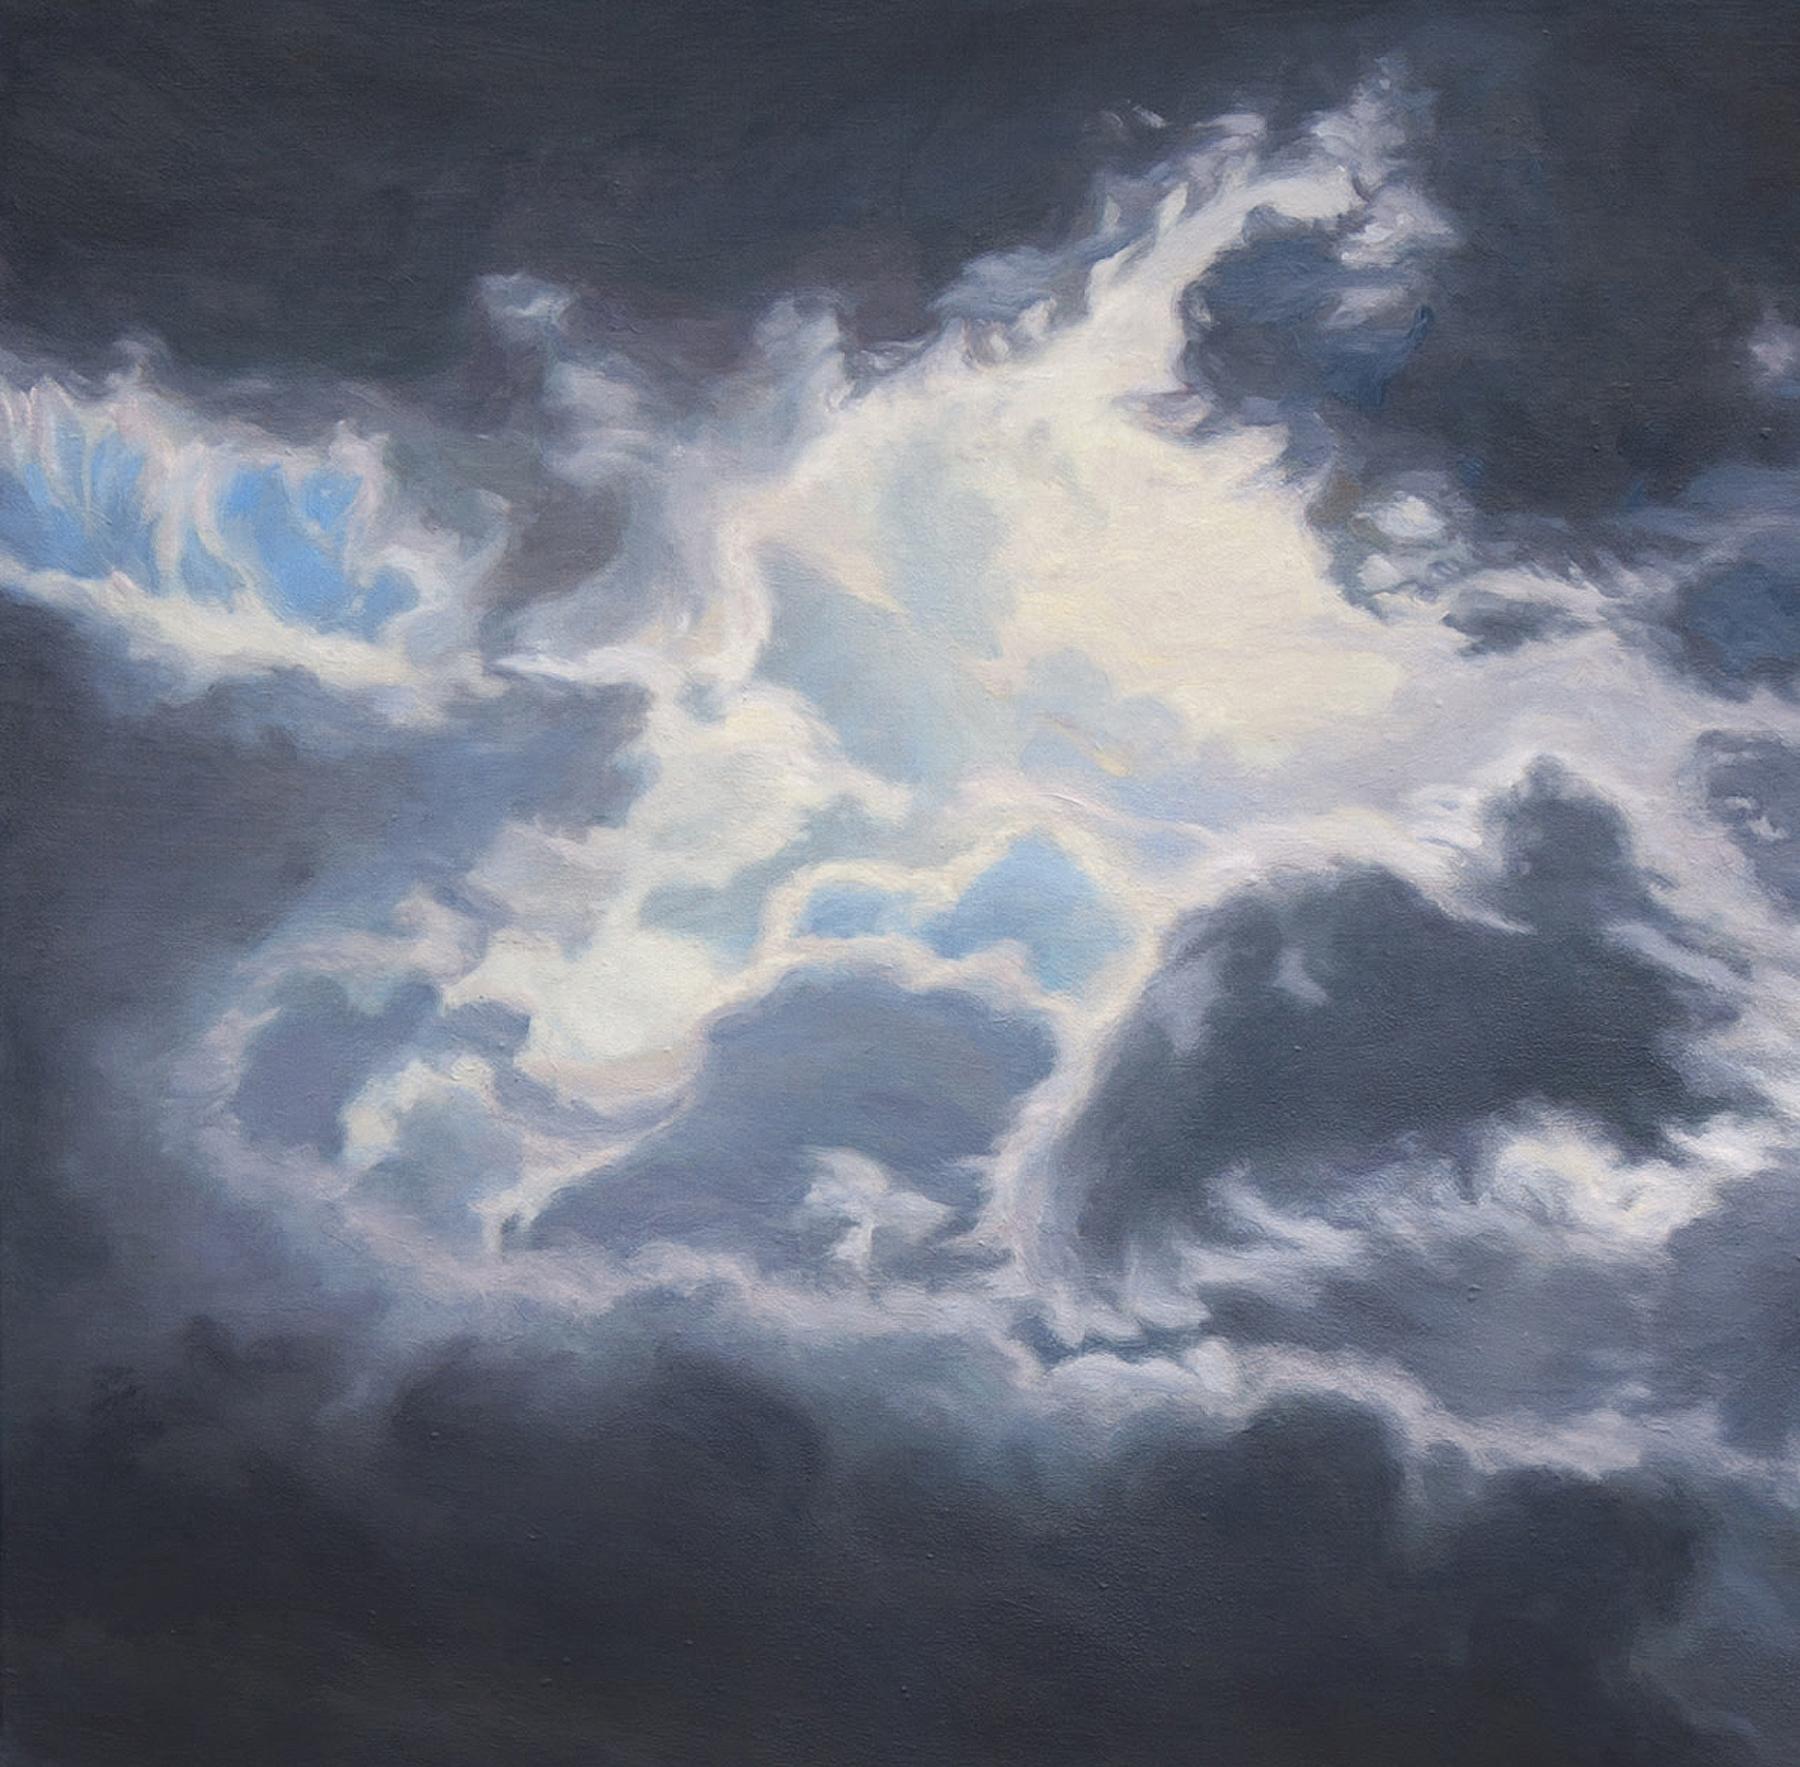 Winds Around You - Paysage nuageux contemporain lunatique, 2011 - Painting de Katherine Kean